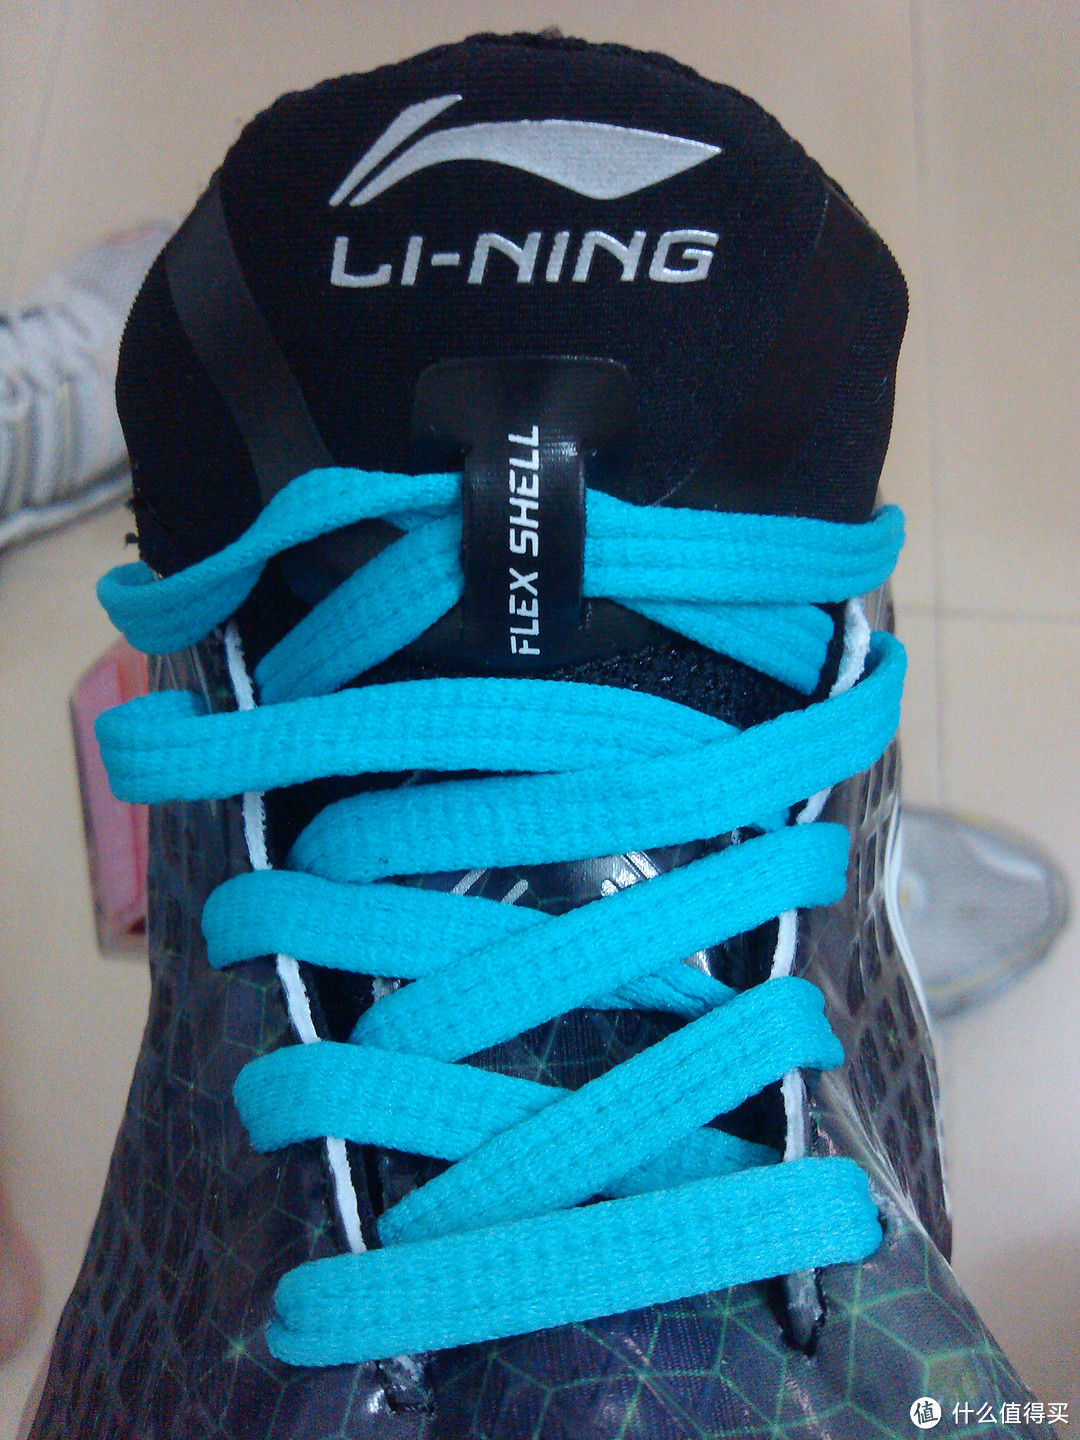 我有特别的减震技巧——LI-NING 李宁弧四代缓震跑鞋